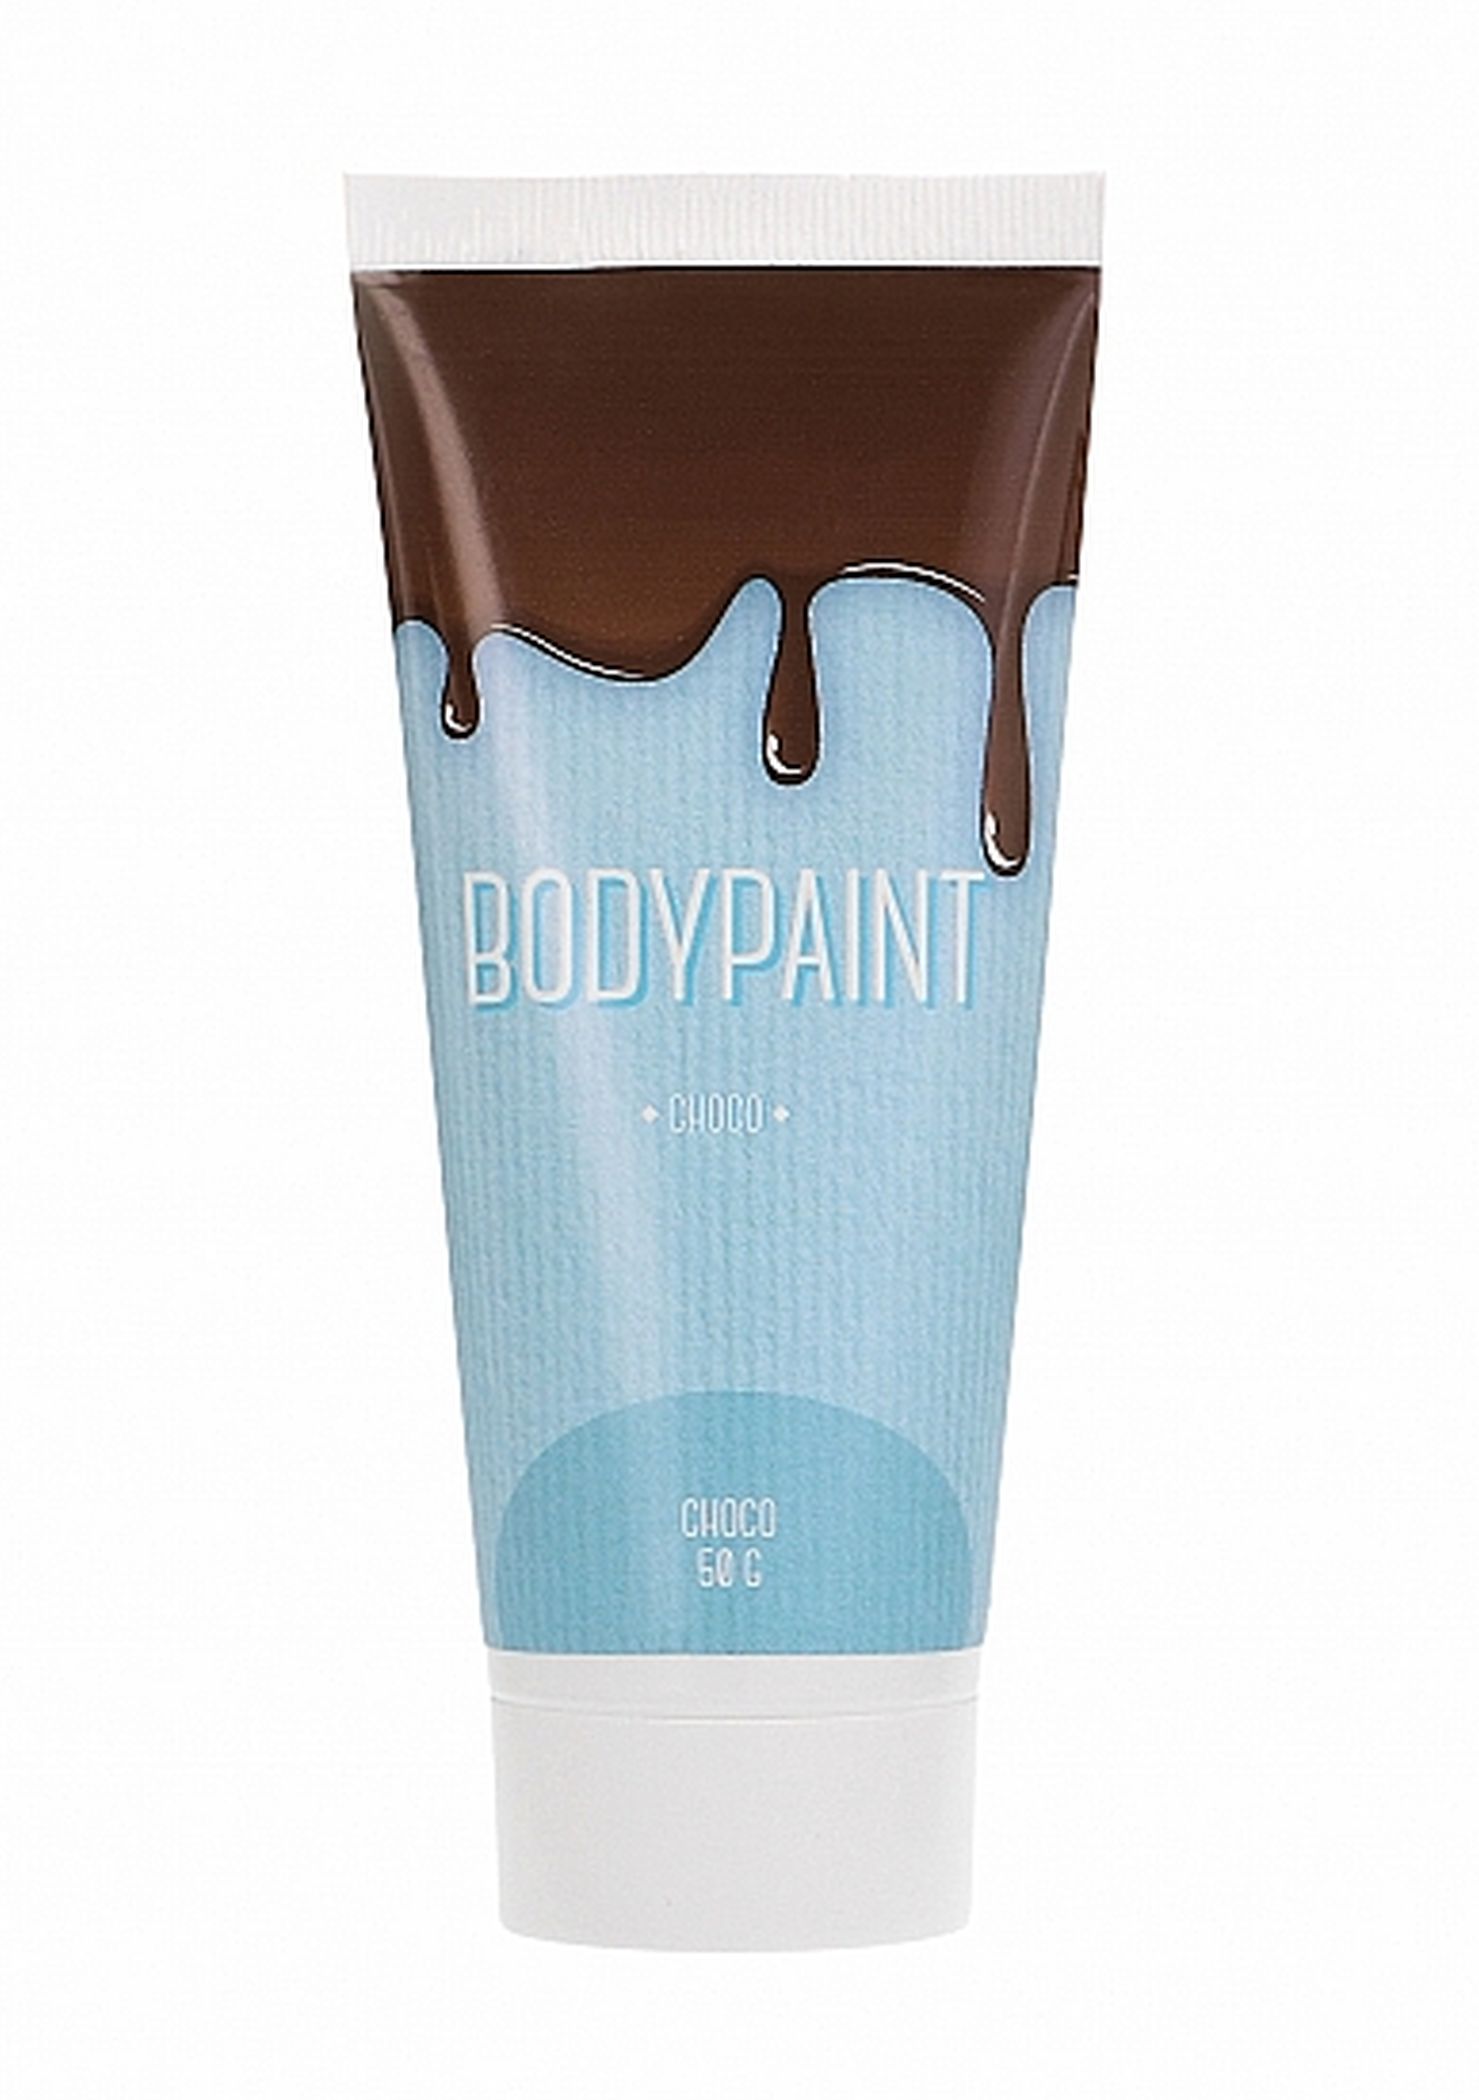 Czekoladowa farba do malowania ciała bodypaint 50g